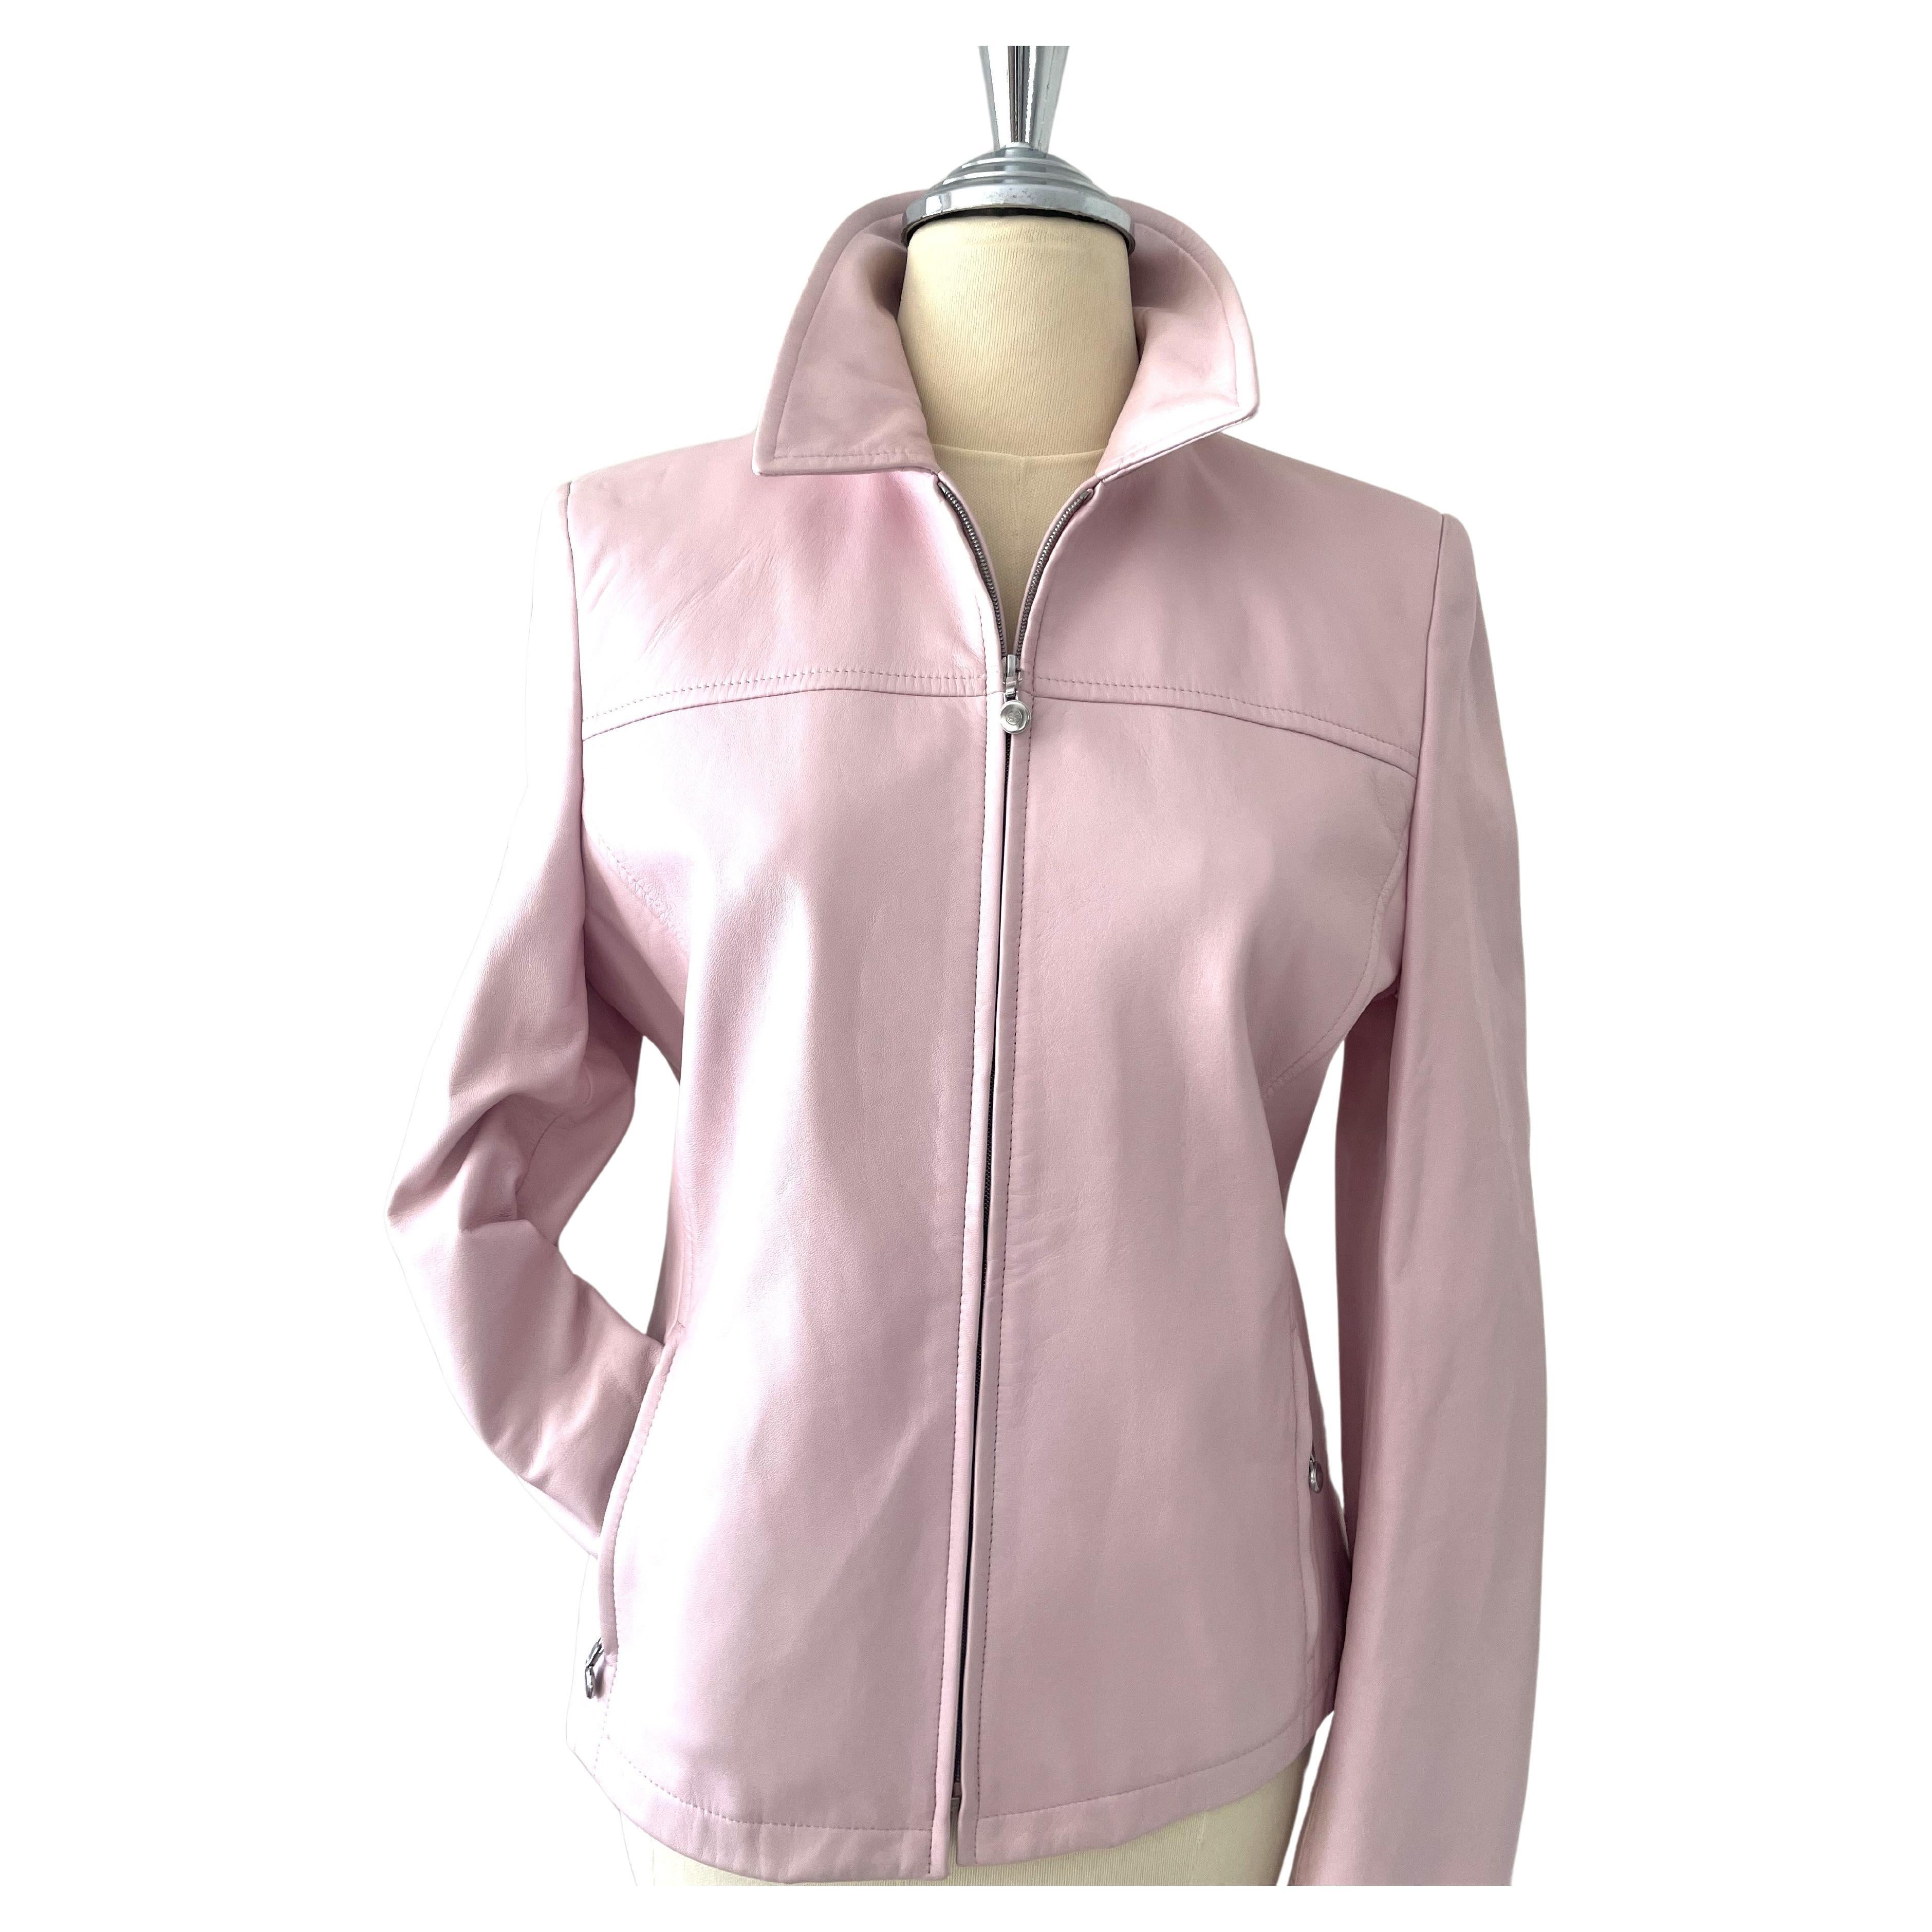 Vintage Escada Leather Jacket Light Pink For Sale